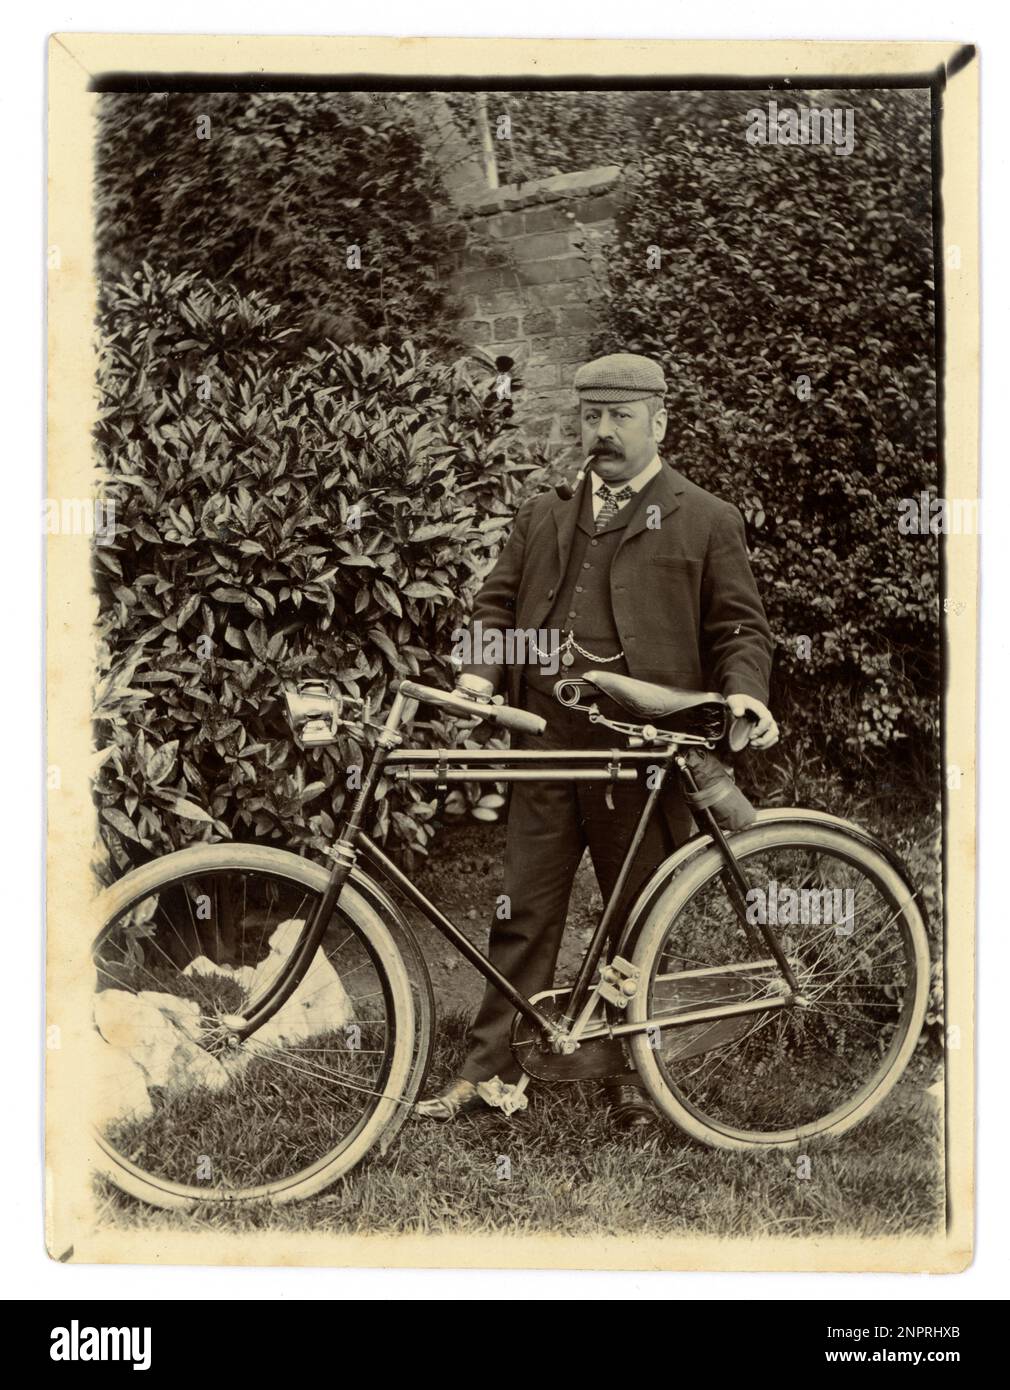 Photographie originale de l'époque victorienne d'un homme d'âge moyen avec son vélo dans un jardin, vélo d'époque, vers 1898, région de Worcester, Royaume-Uni Banque D'Images